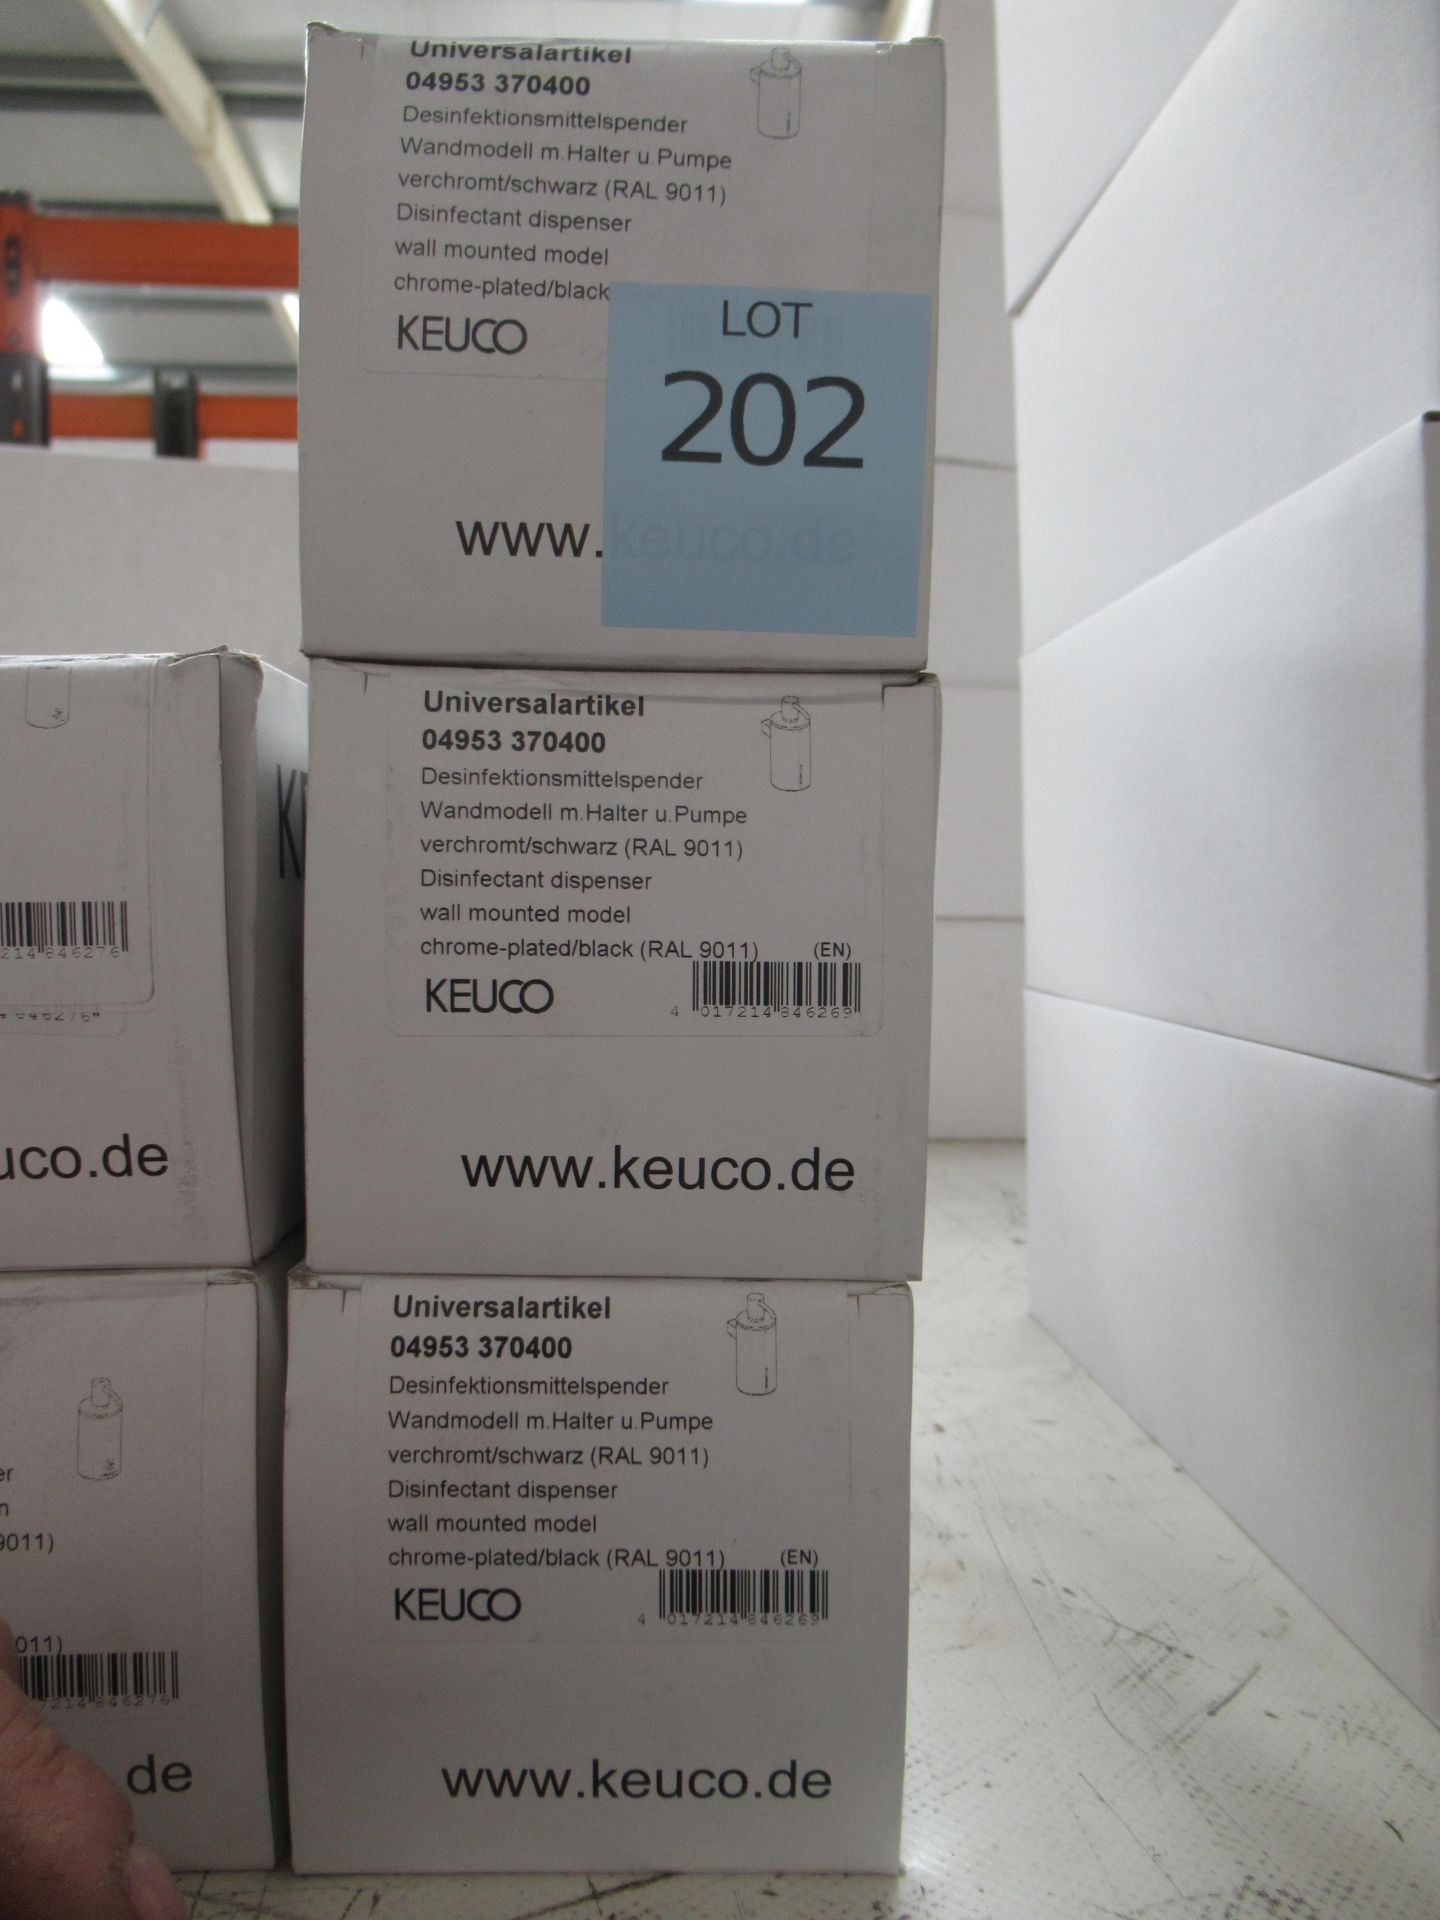 3 x Keuco Disinfectant Dispenser, Chrome Plated/Black, P/N 04952-370400